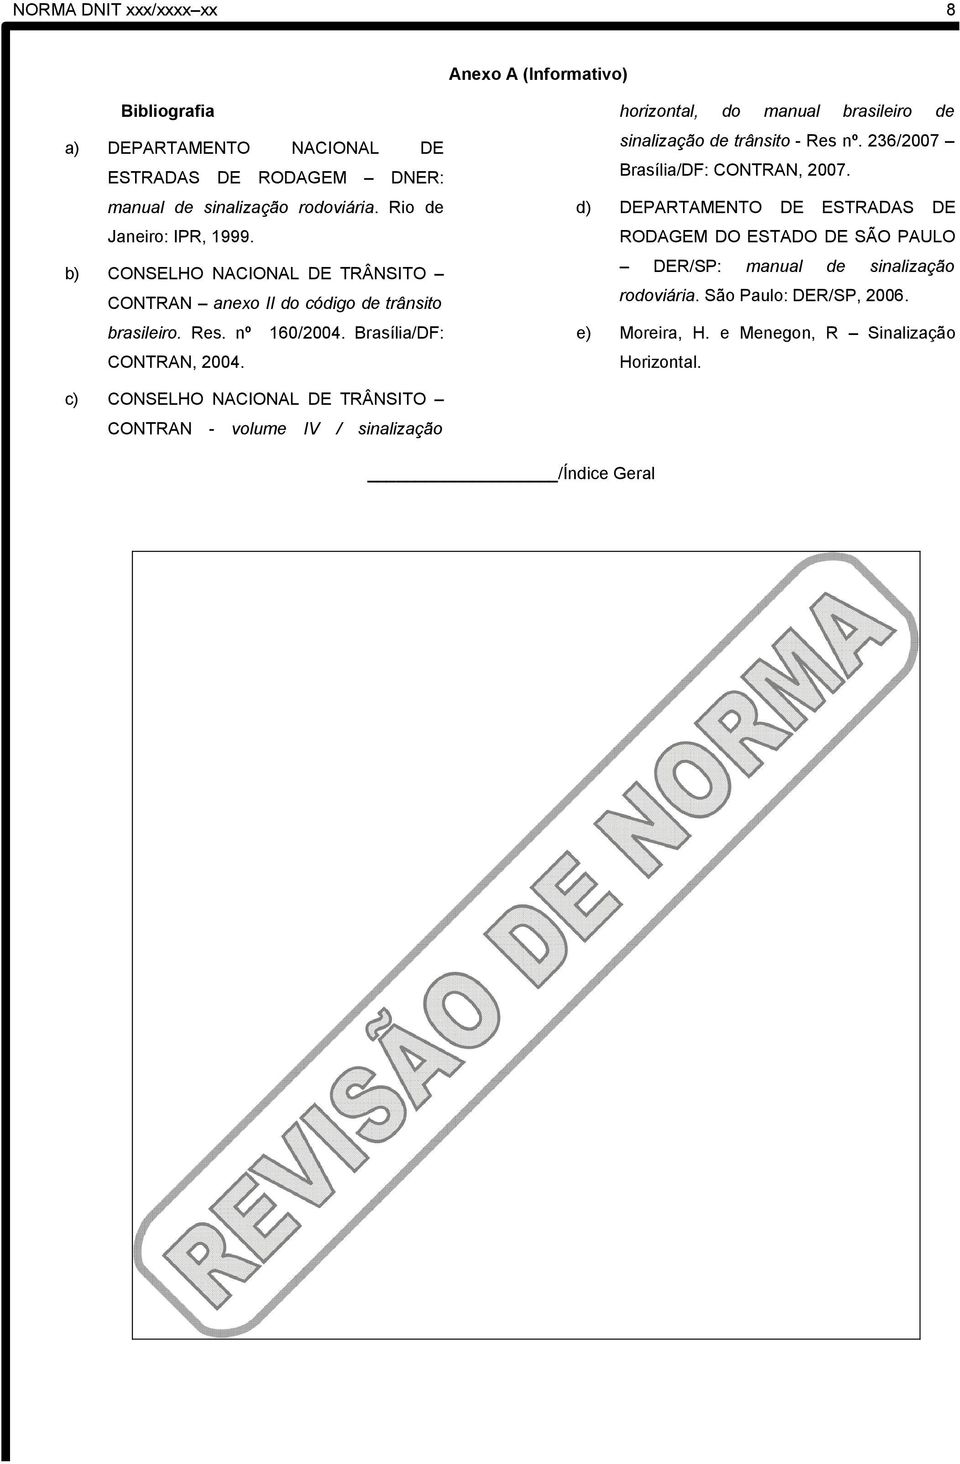 horizontal, do manual brasileiro de sinalização de trânsito - Res nº. 236/2007 Brasília/DF: CONTRAN, 2007.